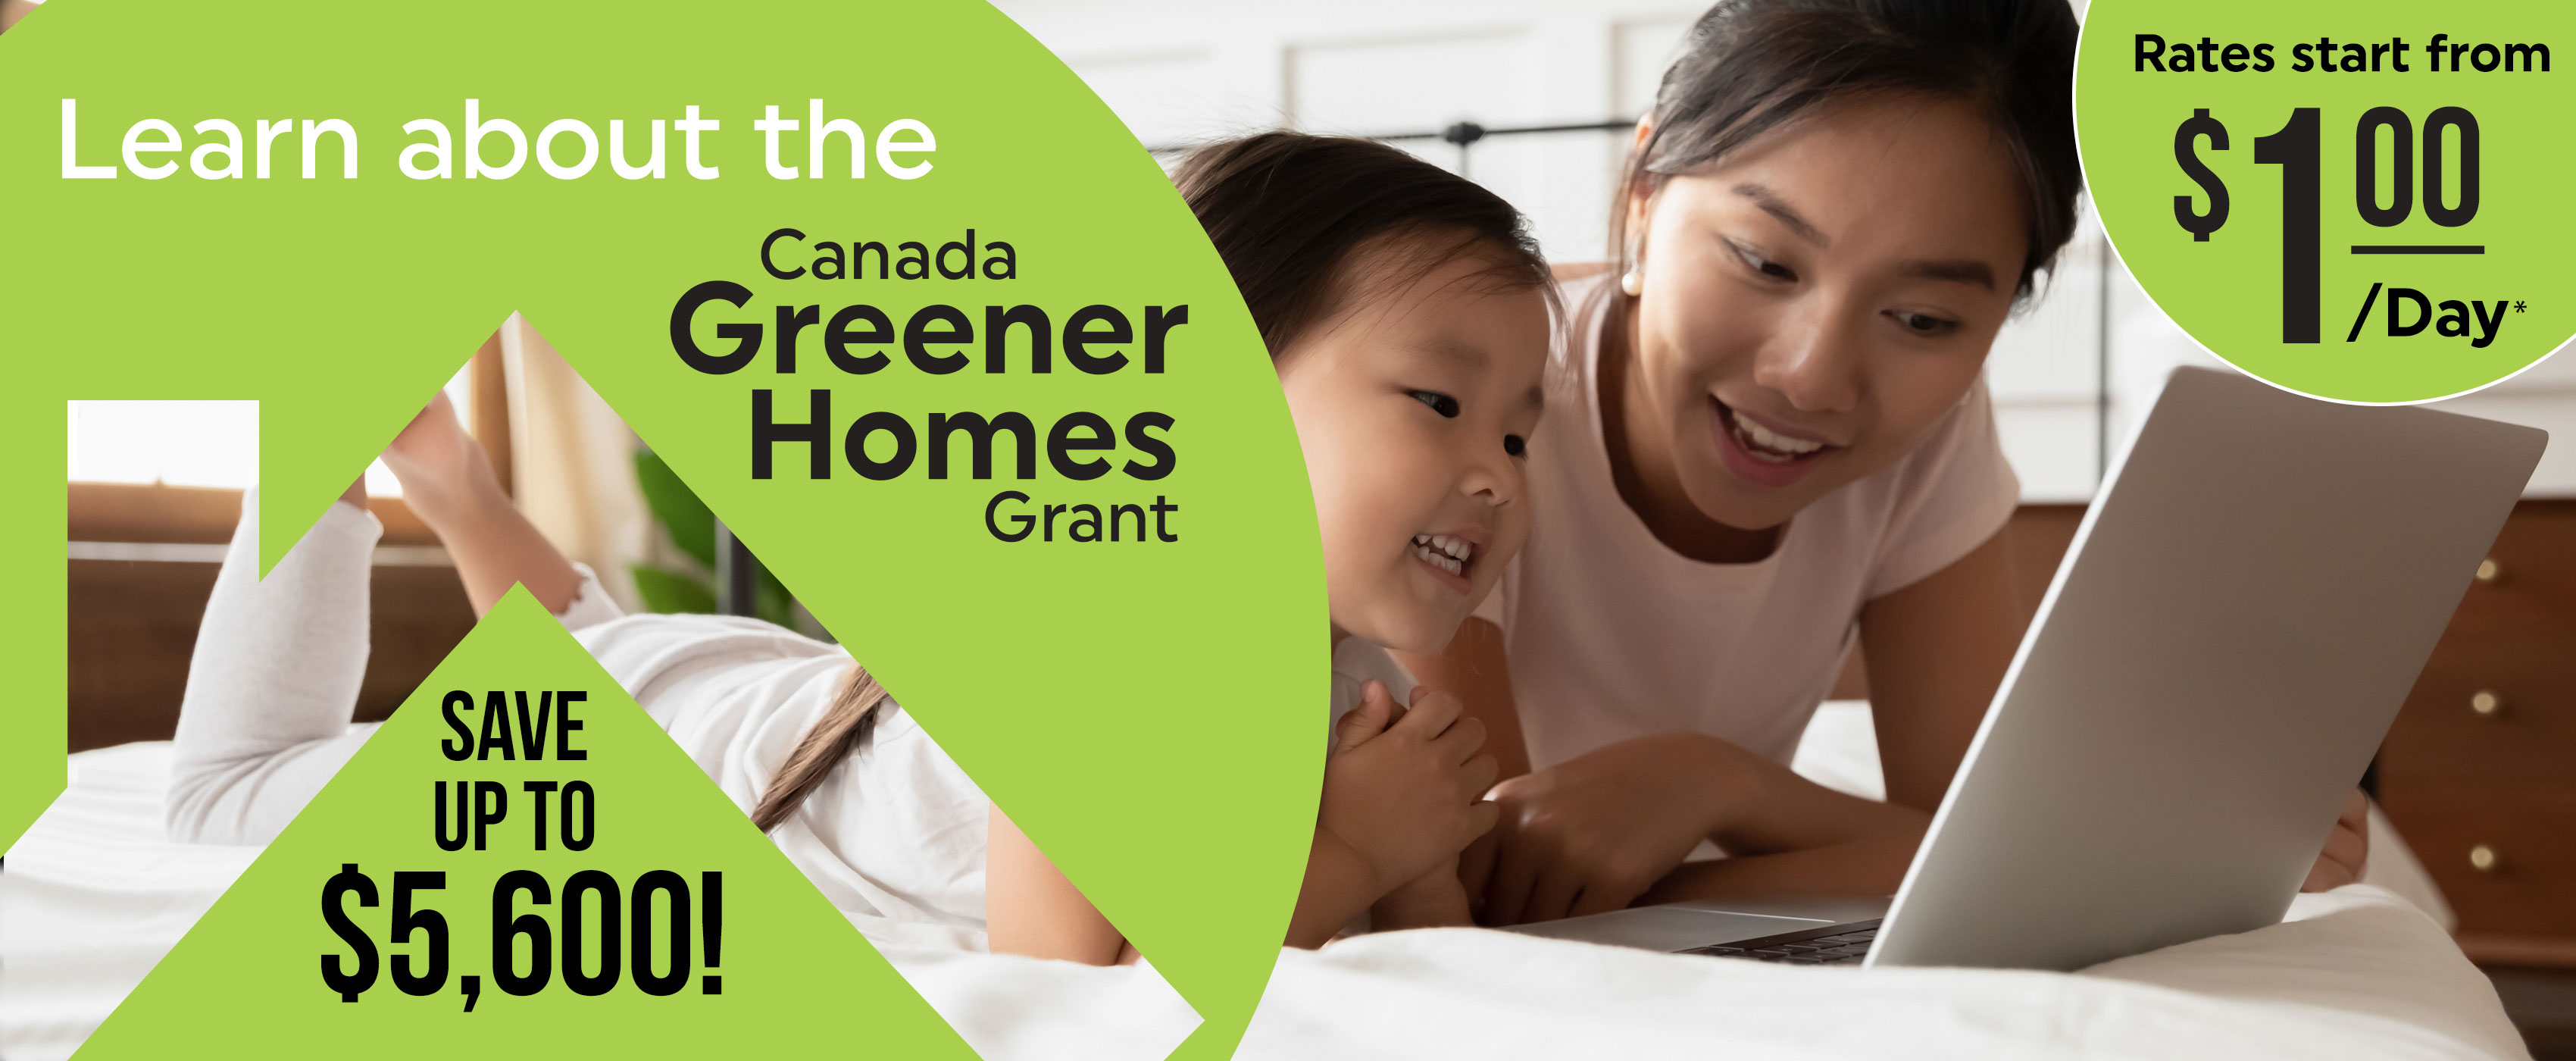 Greener-Homes-Grant